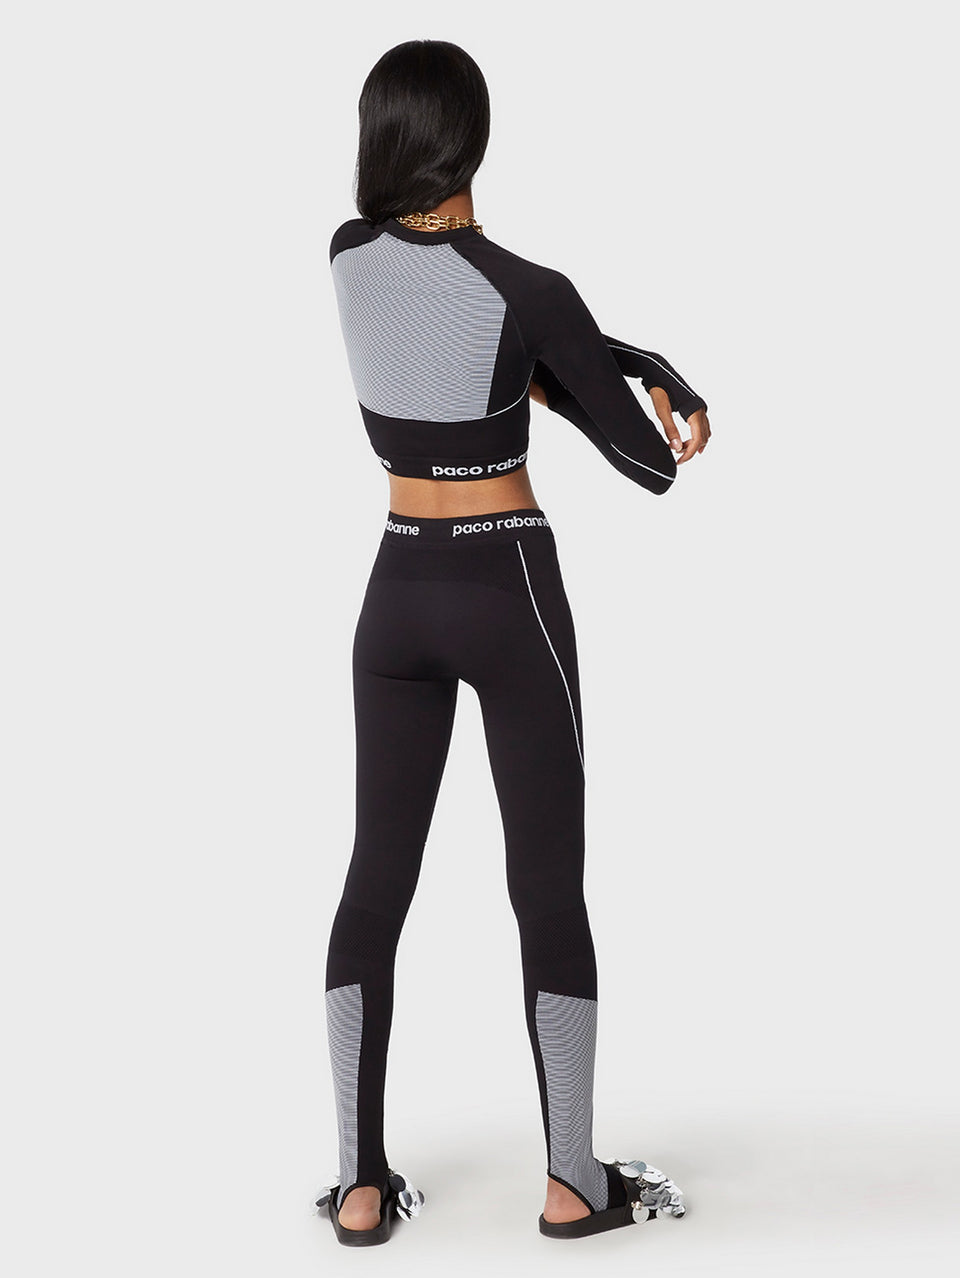 Bodyline technical leggings